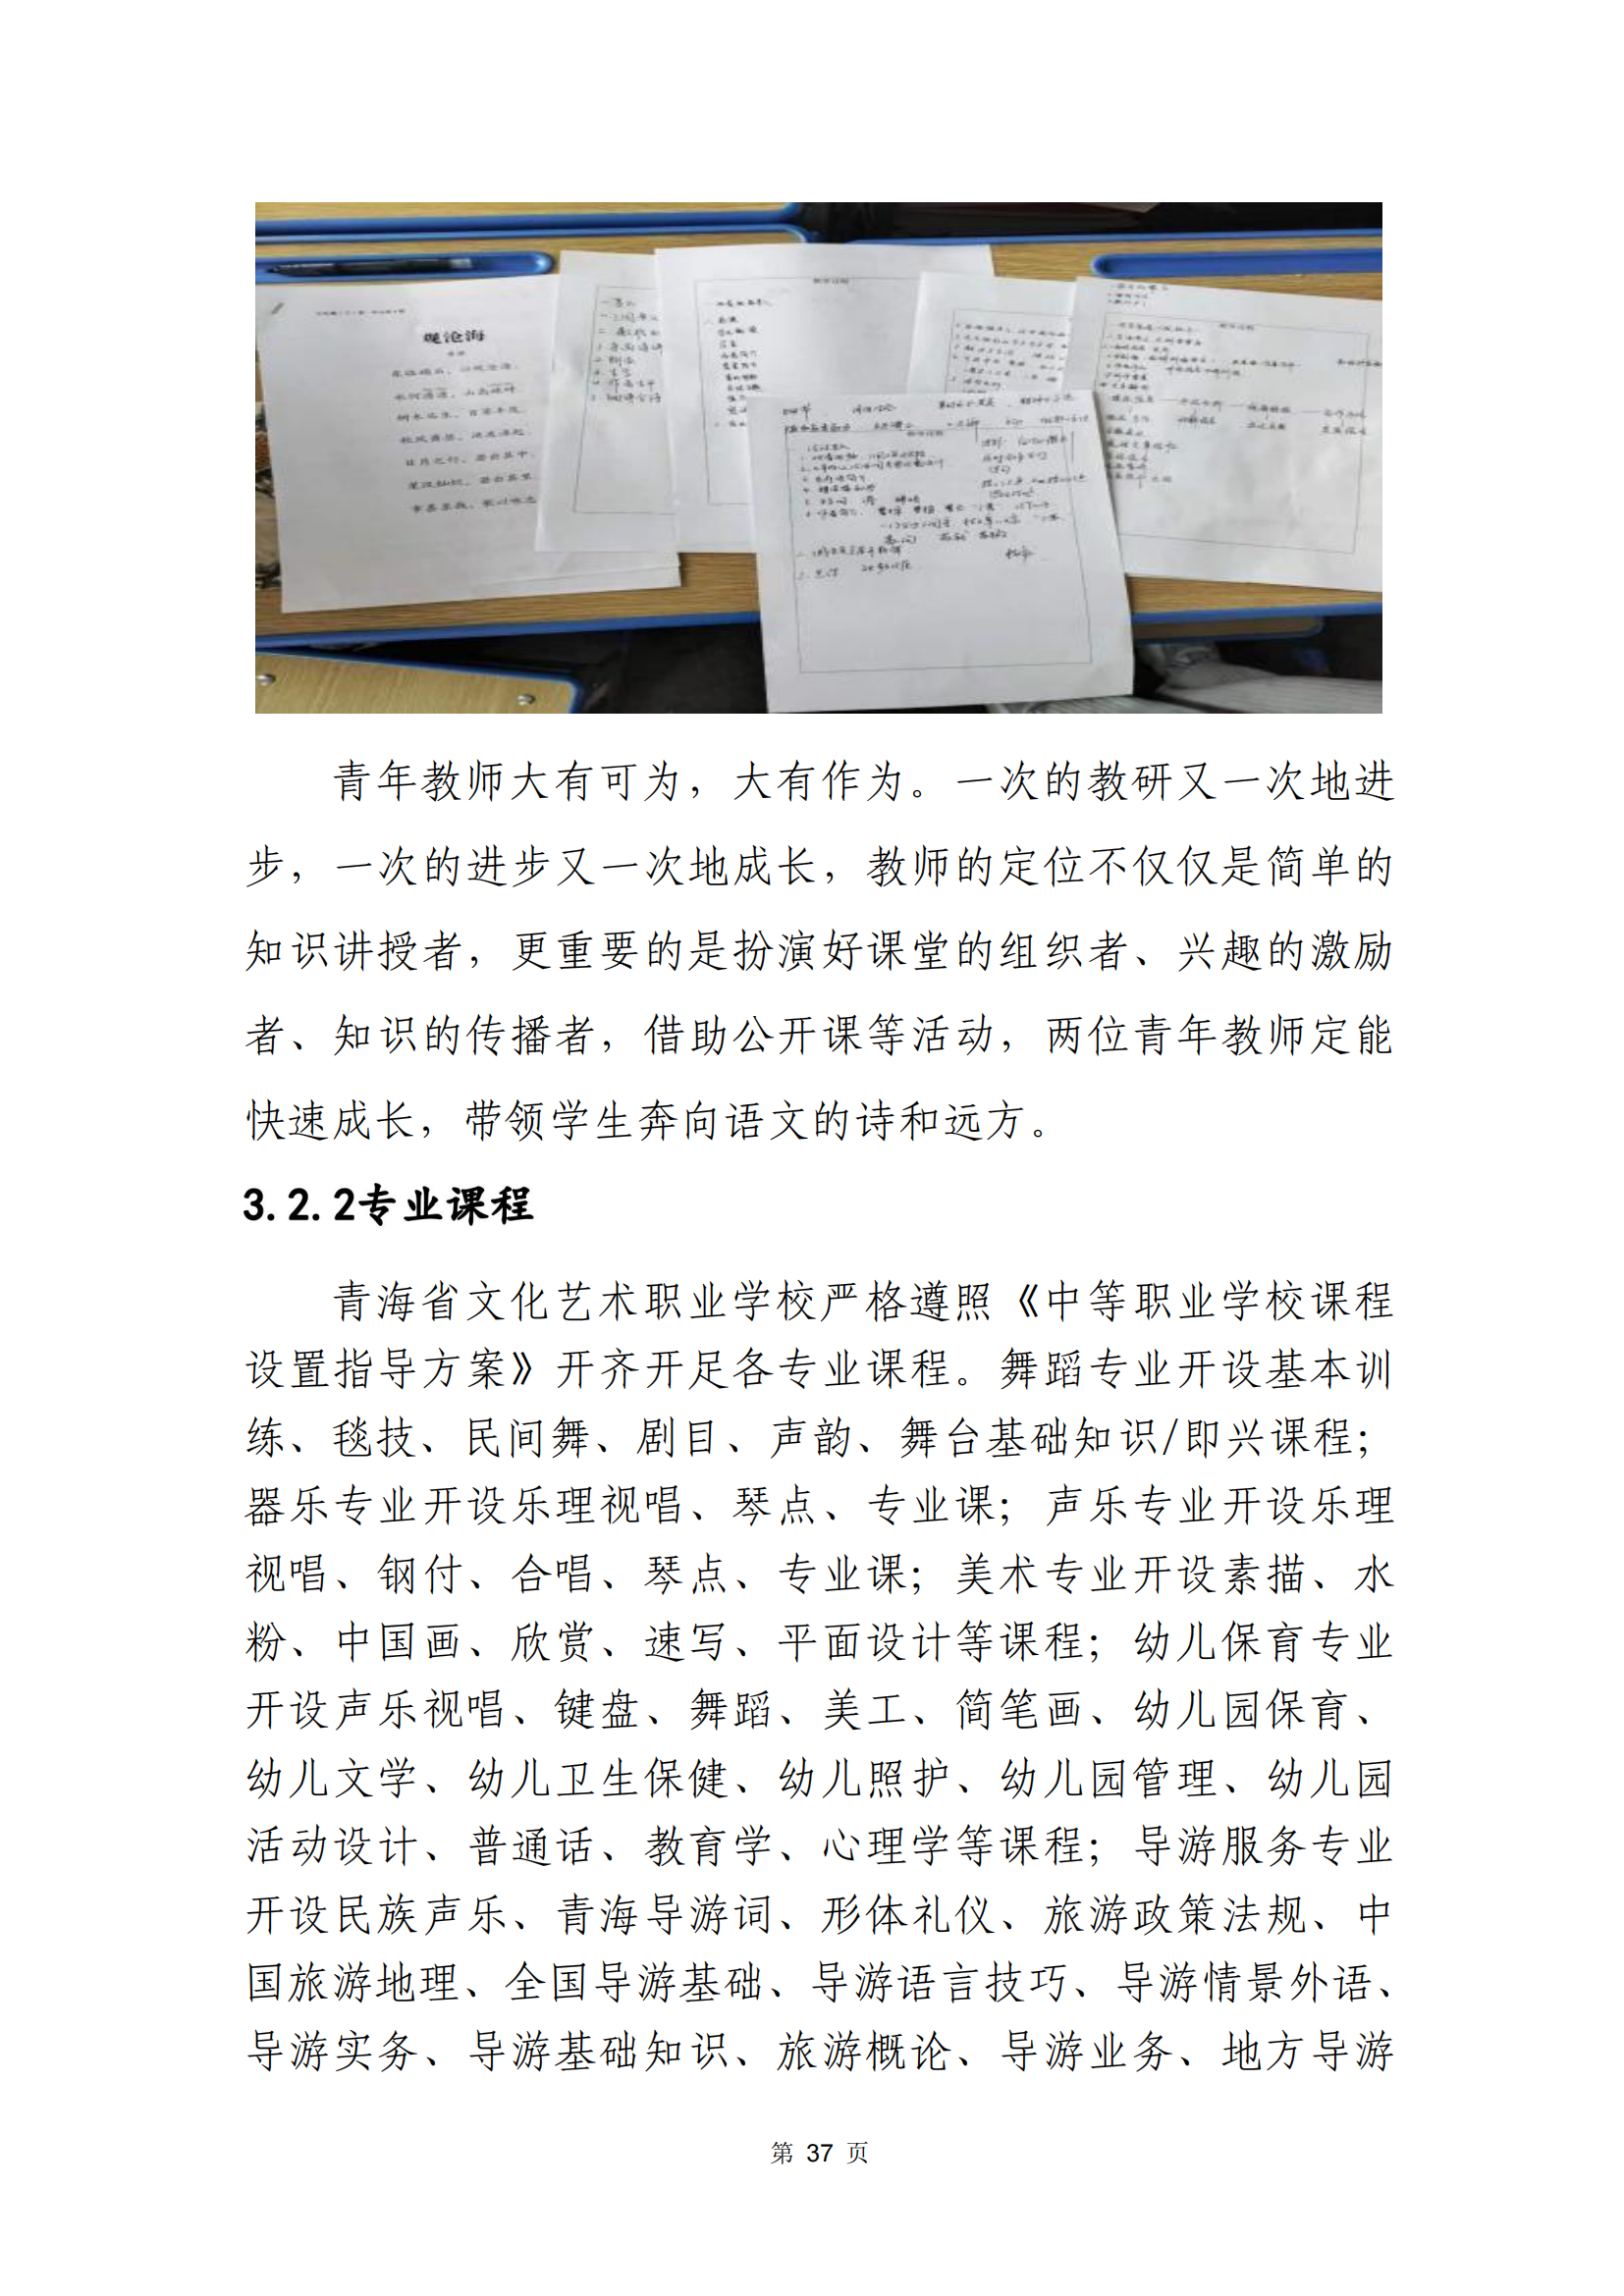 青海省文化艺术职业学校教育质量年报_44.png